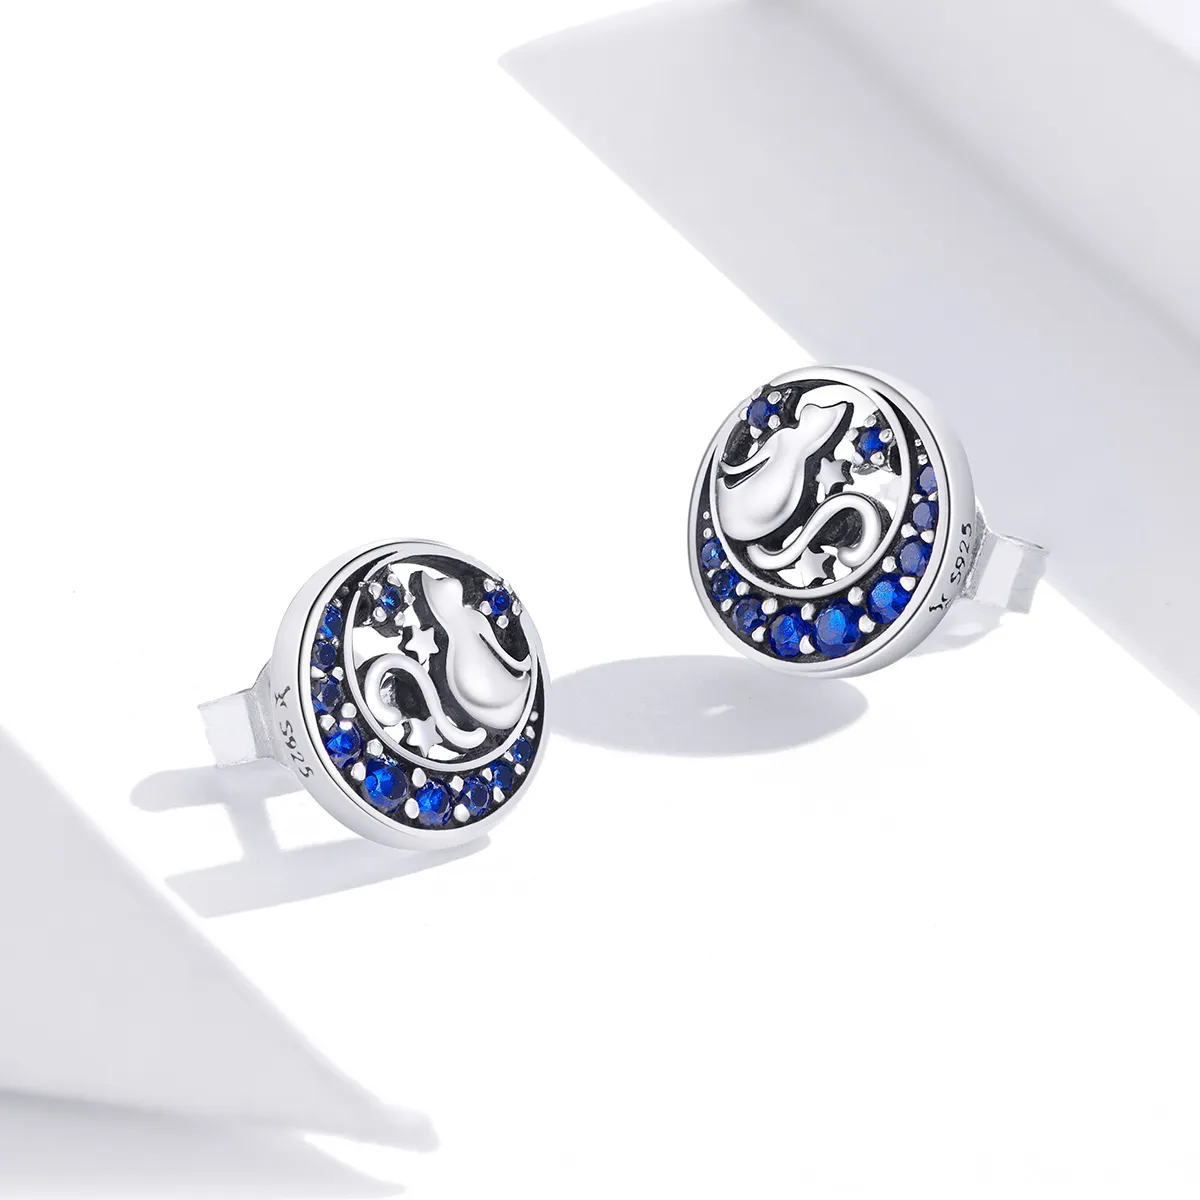 Pandora Style Silver Blue Moon & Kitty Stud Earrings - SCE880